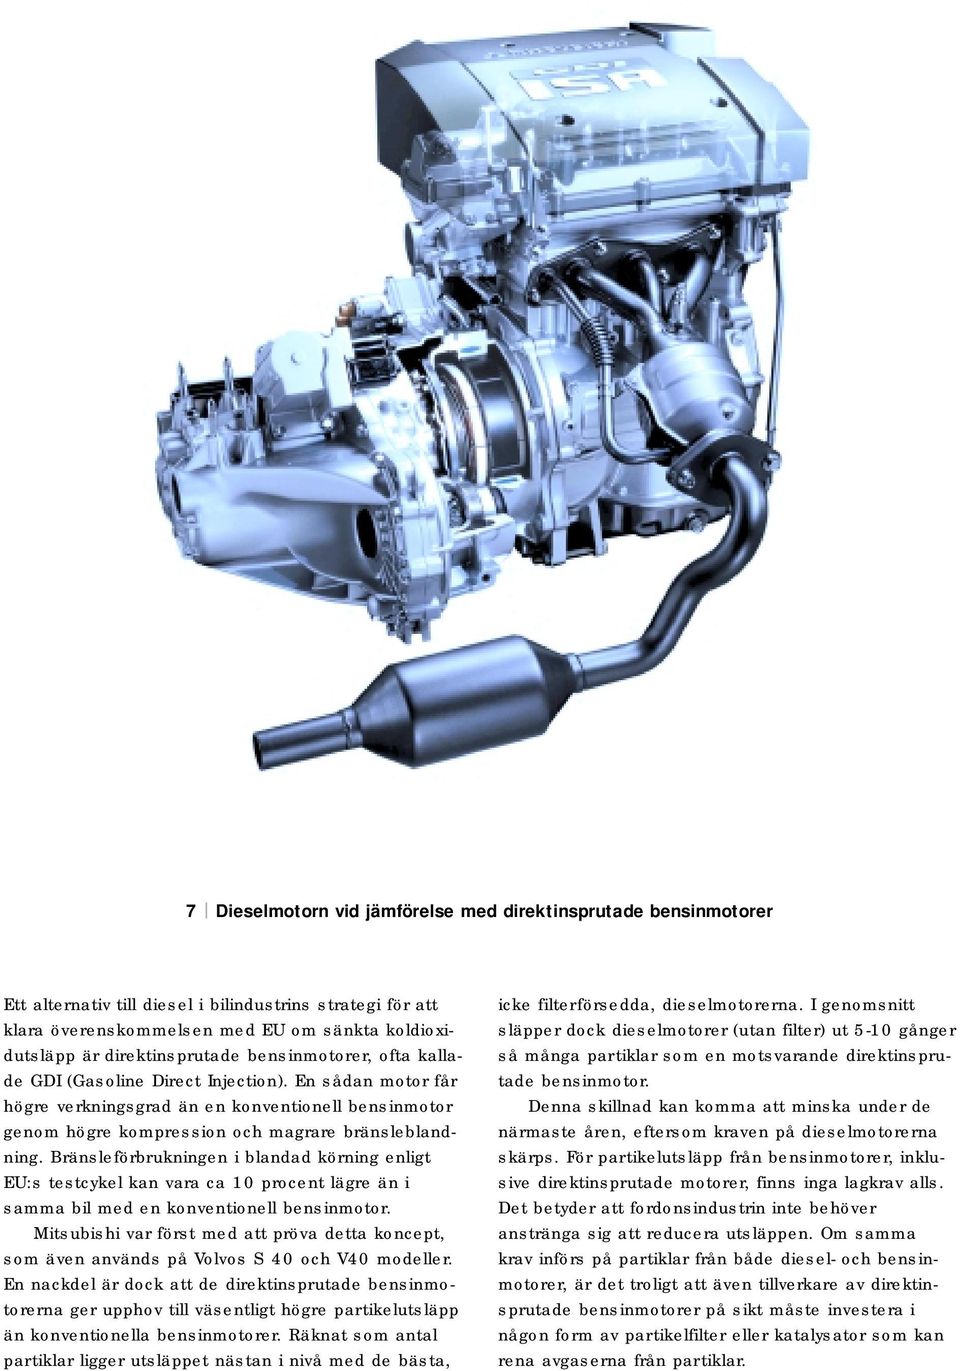 En sådan motor får högre verkningsgrad än en konventionell bensinmotor genom högre kompression och magrare bränsleblandning.